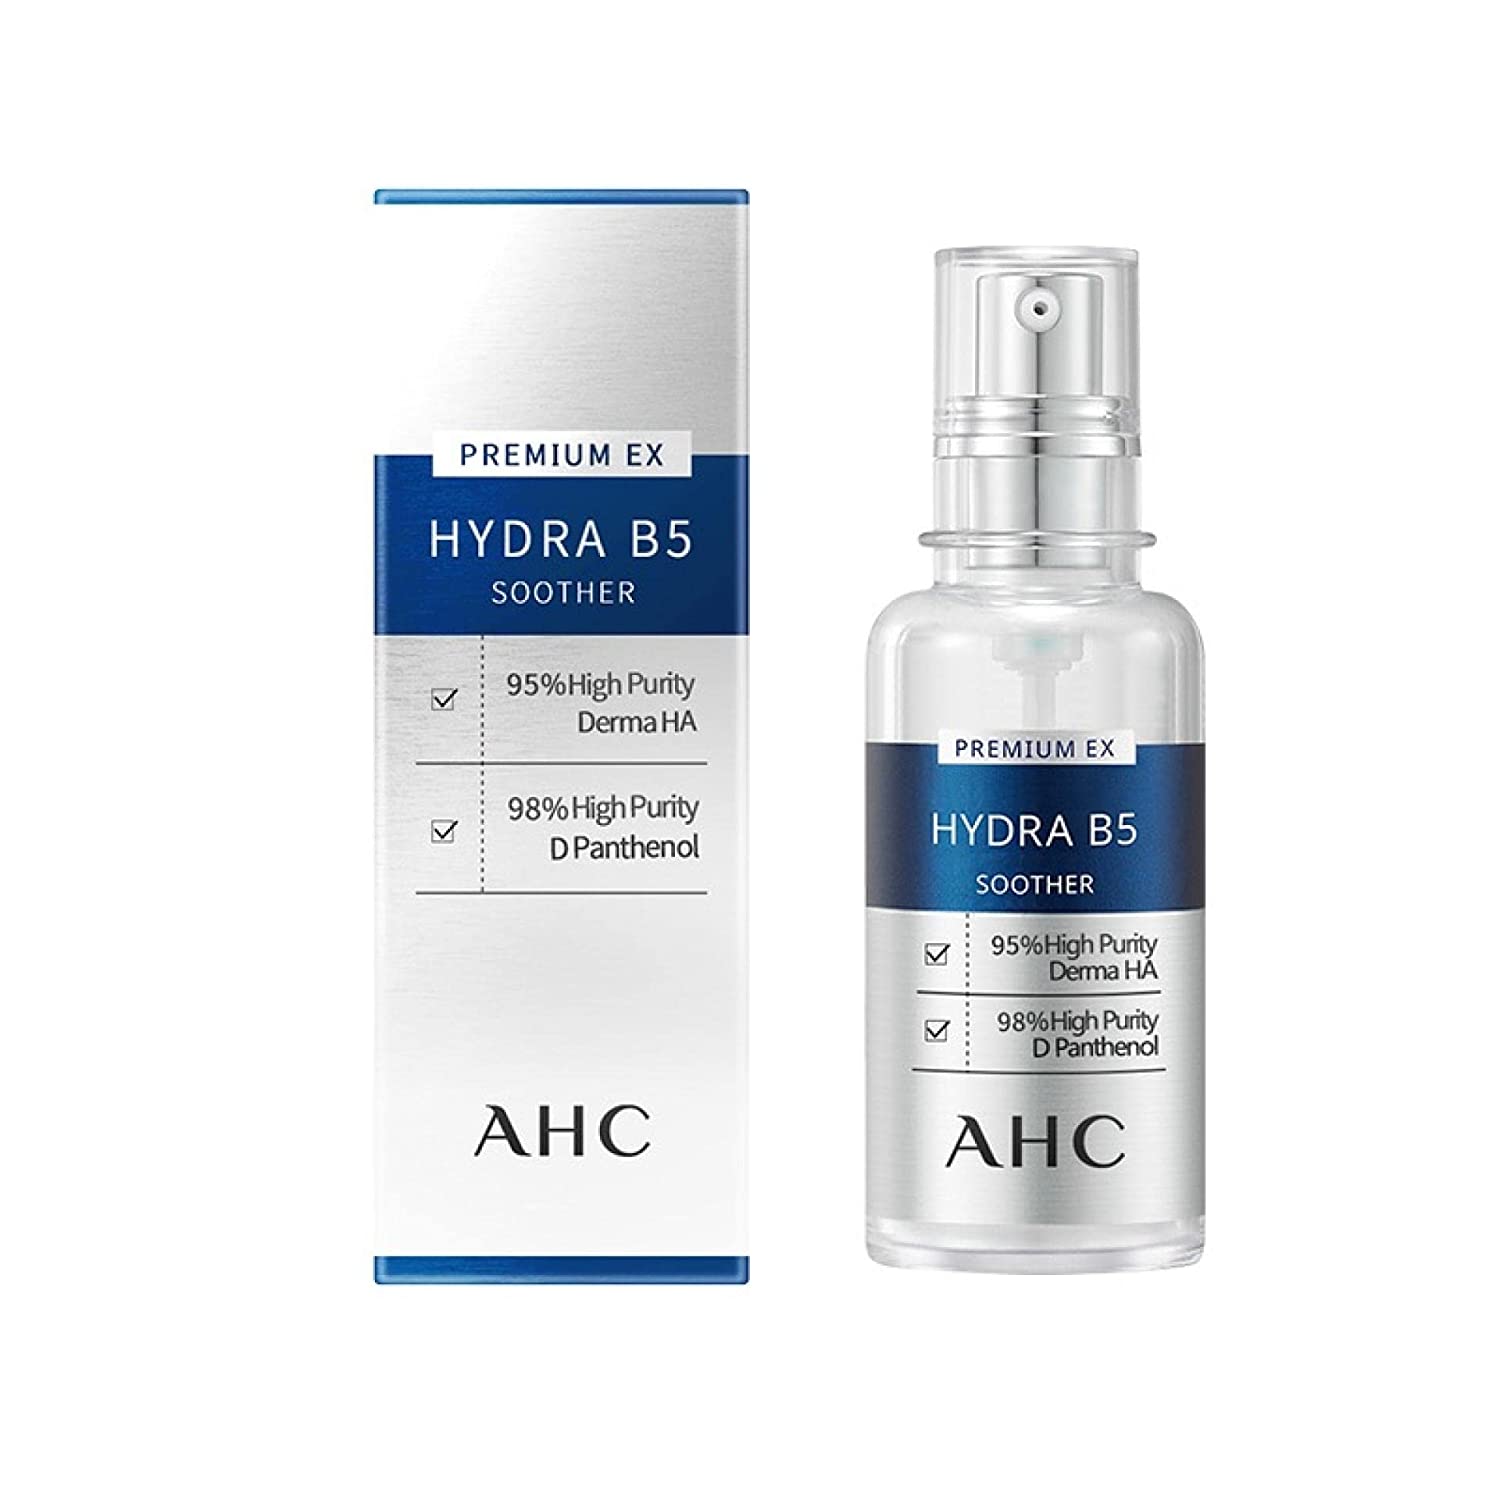 รีวิว AHC Premium Hydra B5 Cream ครีมล็อกความชุ่มชื้นให้ผิว ผิวเนียน ...